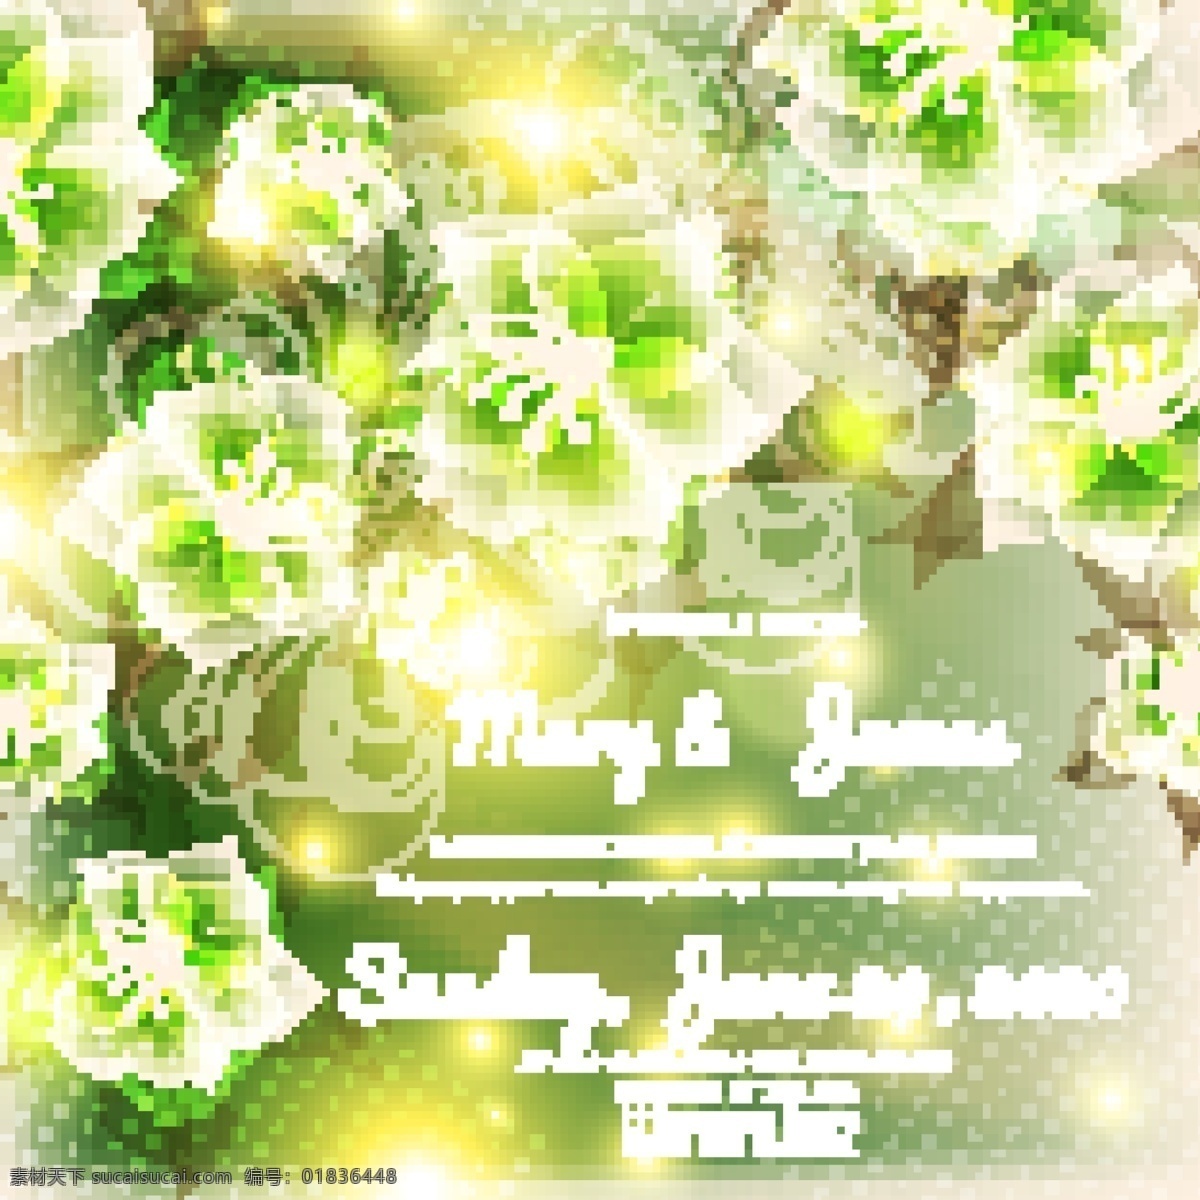 梦幻 绿色 花朵 背景 矢量 模板 婚礼 结婚 婚礼背景 花草树木 生物世界 矢量素材